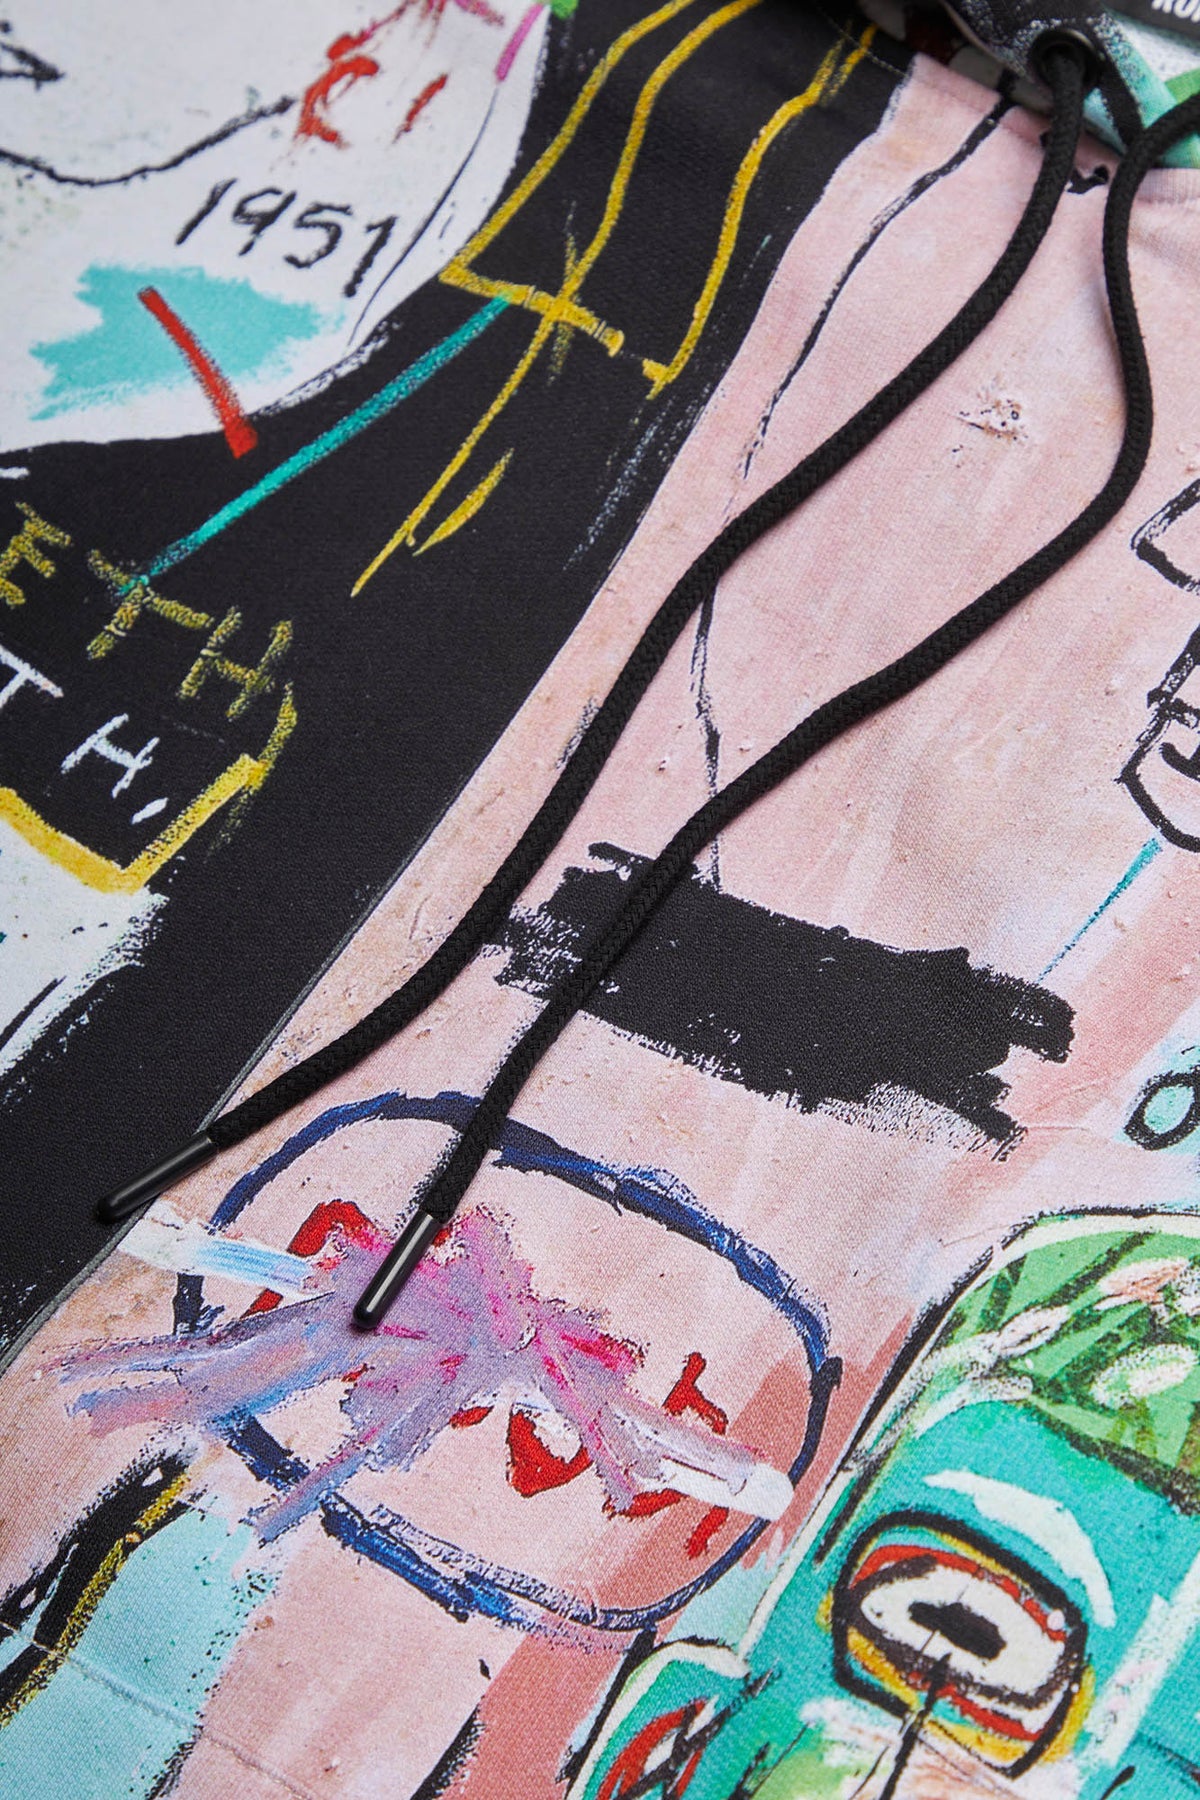 Basquiat "In Italian" All-Over Hoodie